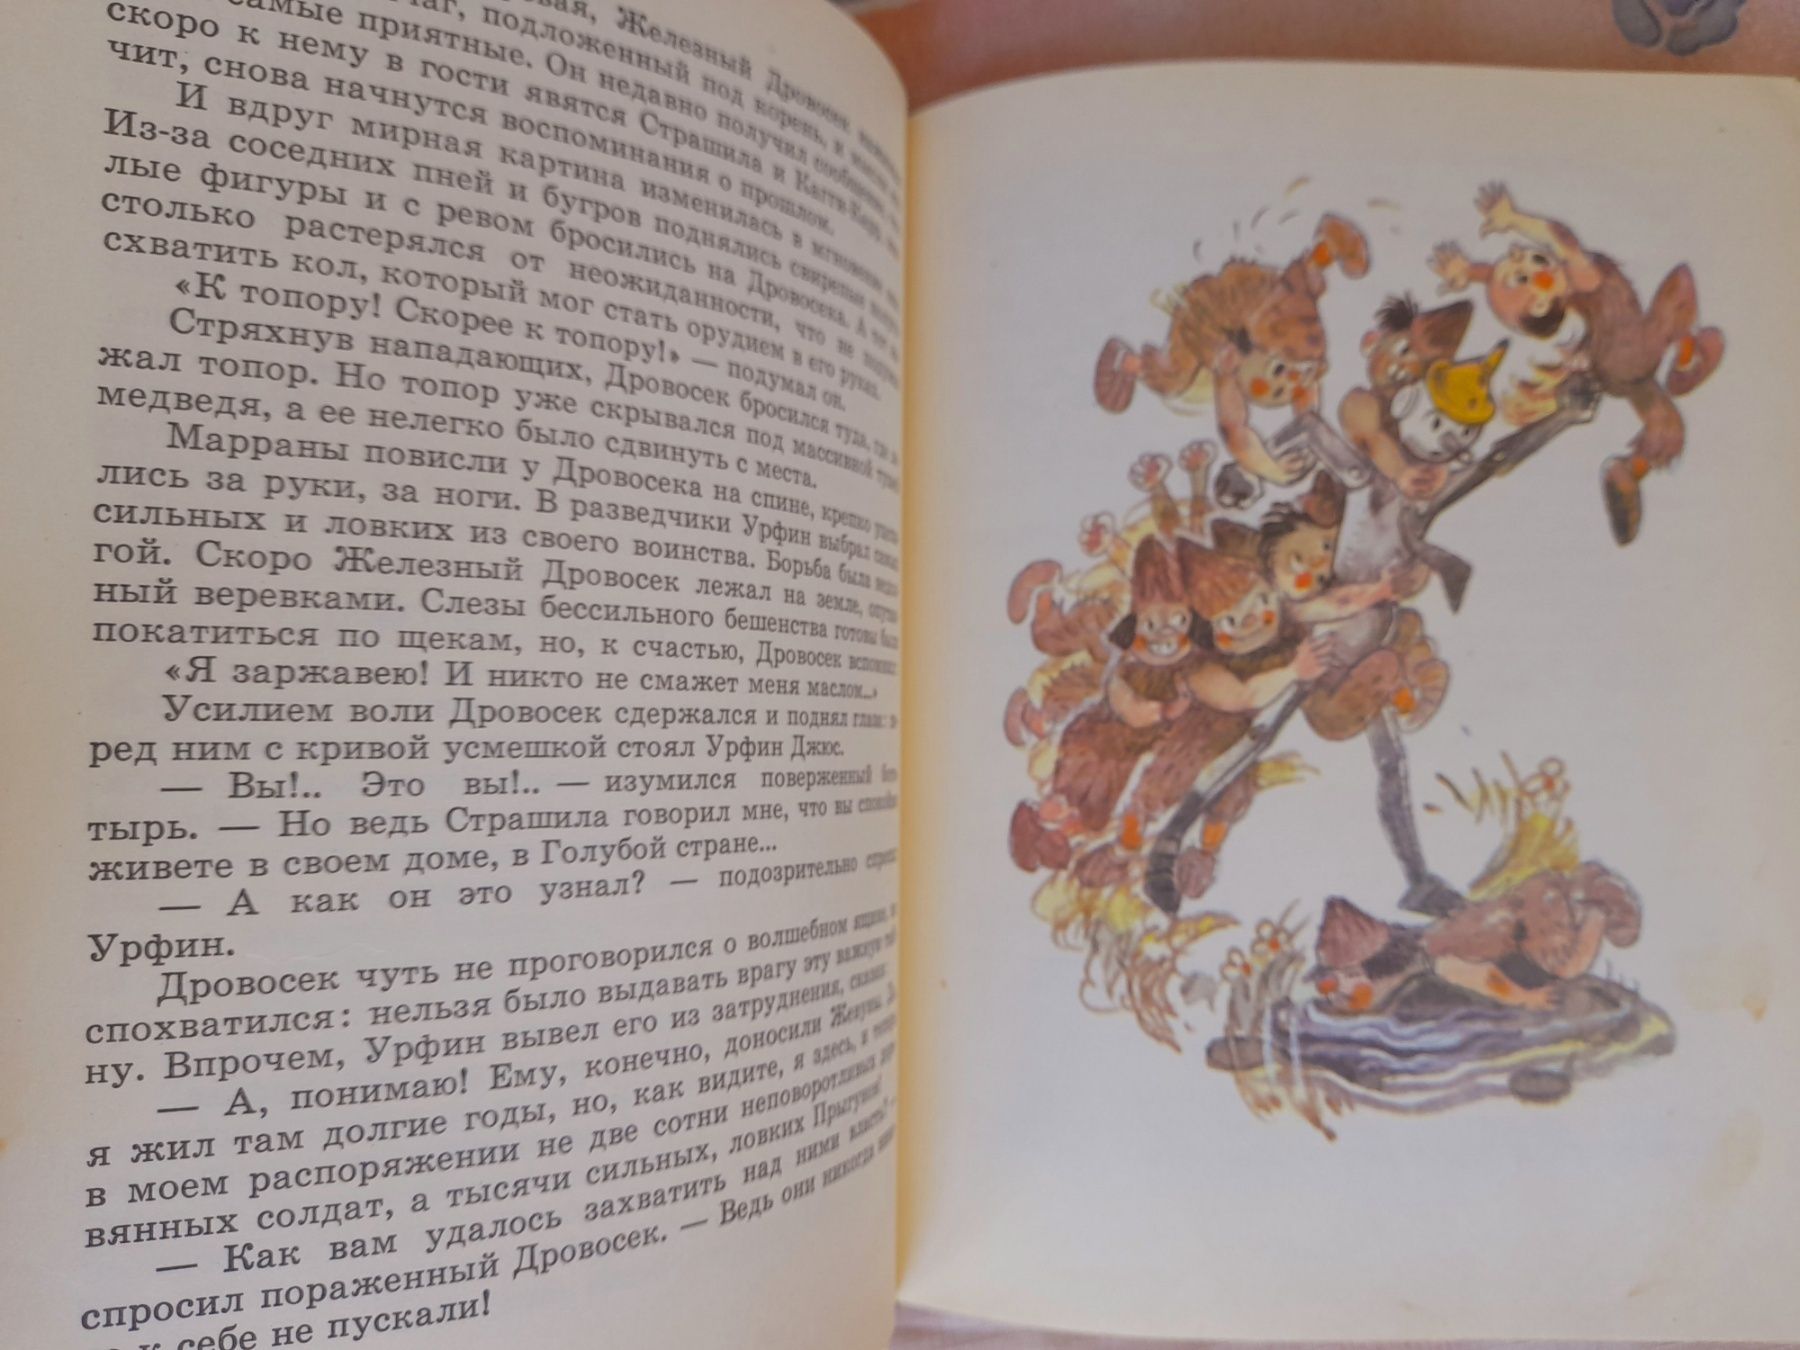 А Волков Огненный бог Марранов 1972 Сказки приключения фантастика шеде